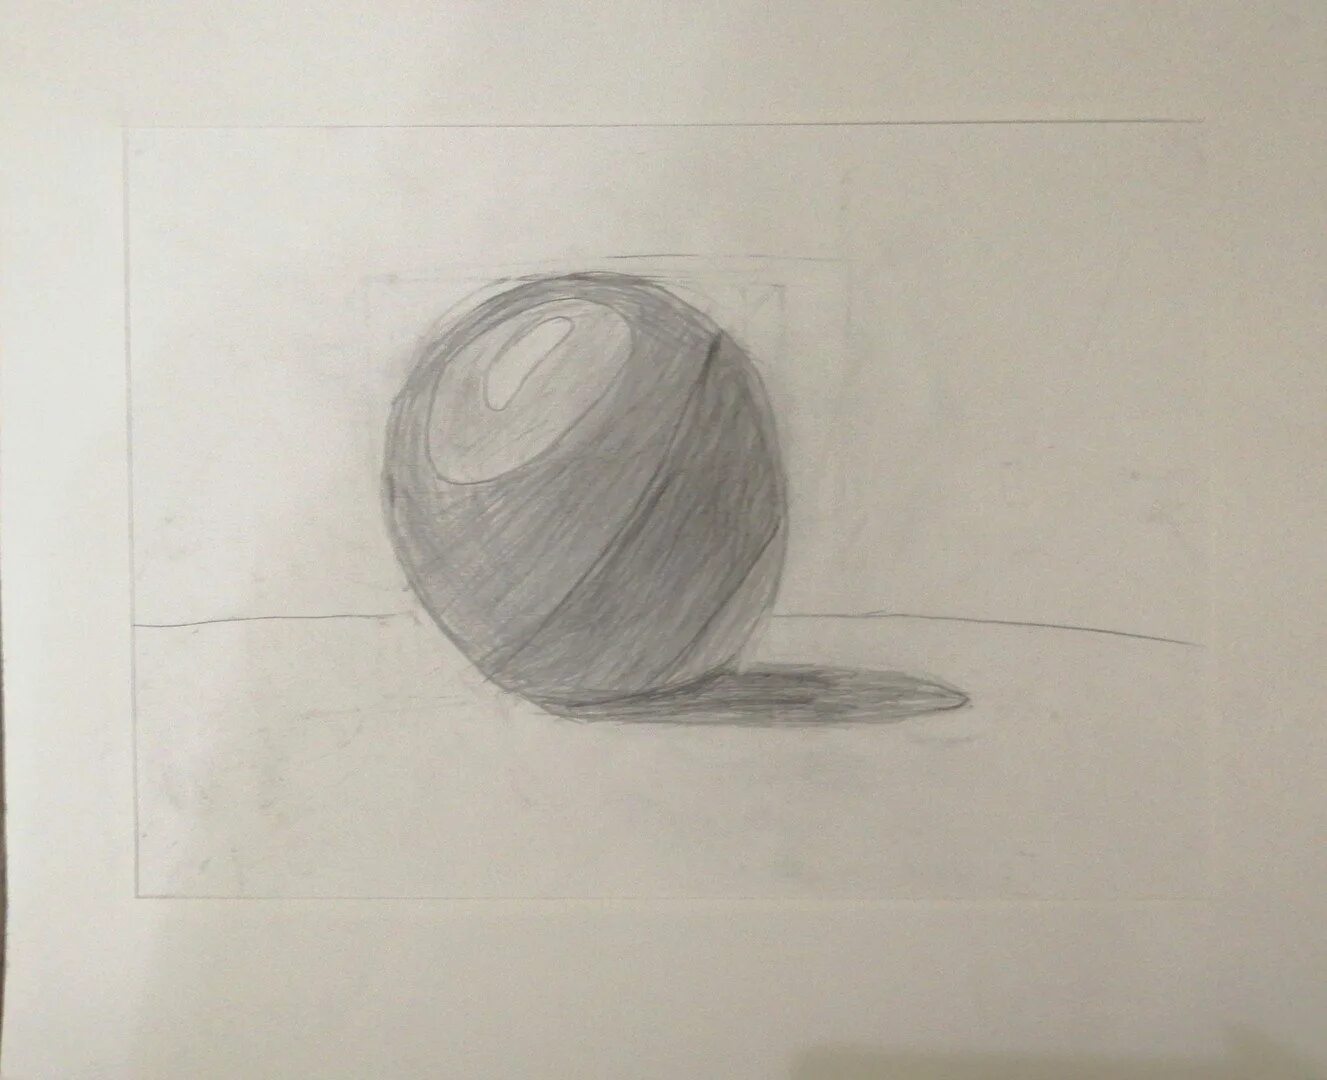 Рисунок шар 8. Шар рисунок. Металлический шар рисунок карандашом. Граненый шар рисунок. Мистический шар рисунок.